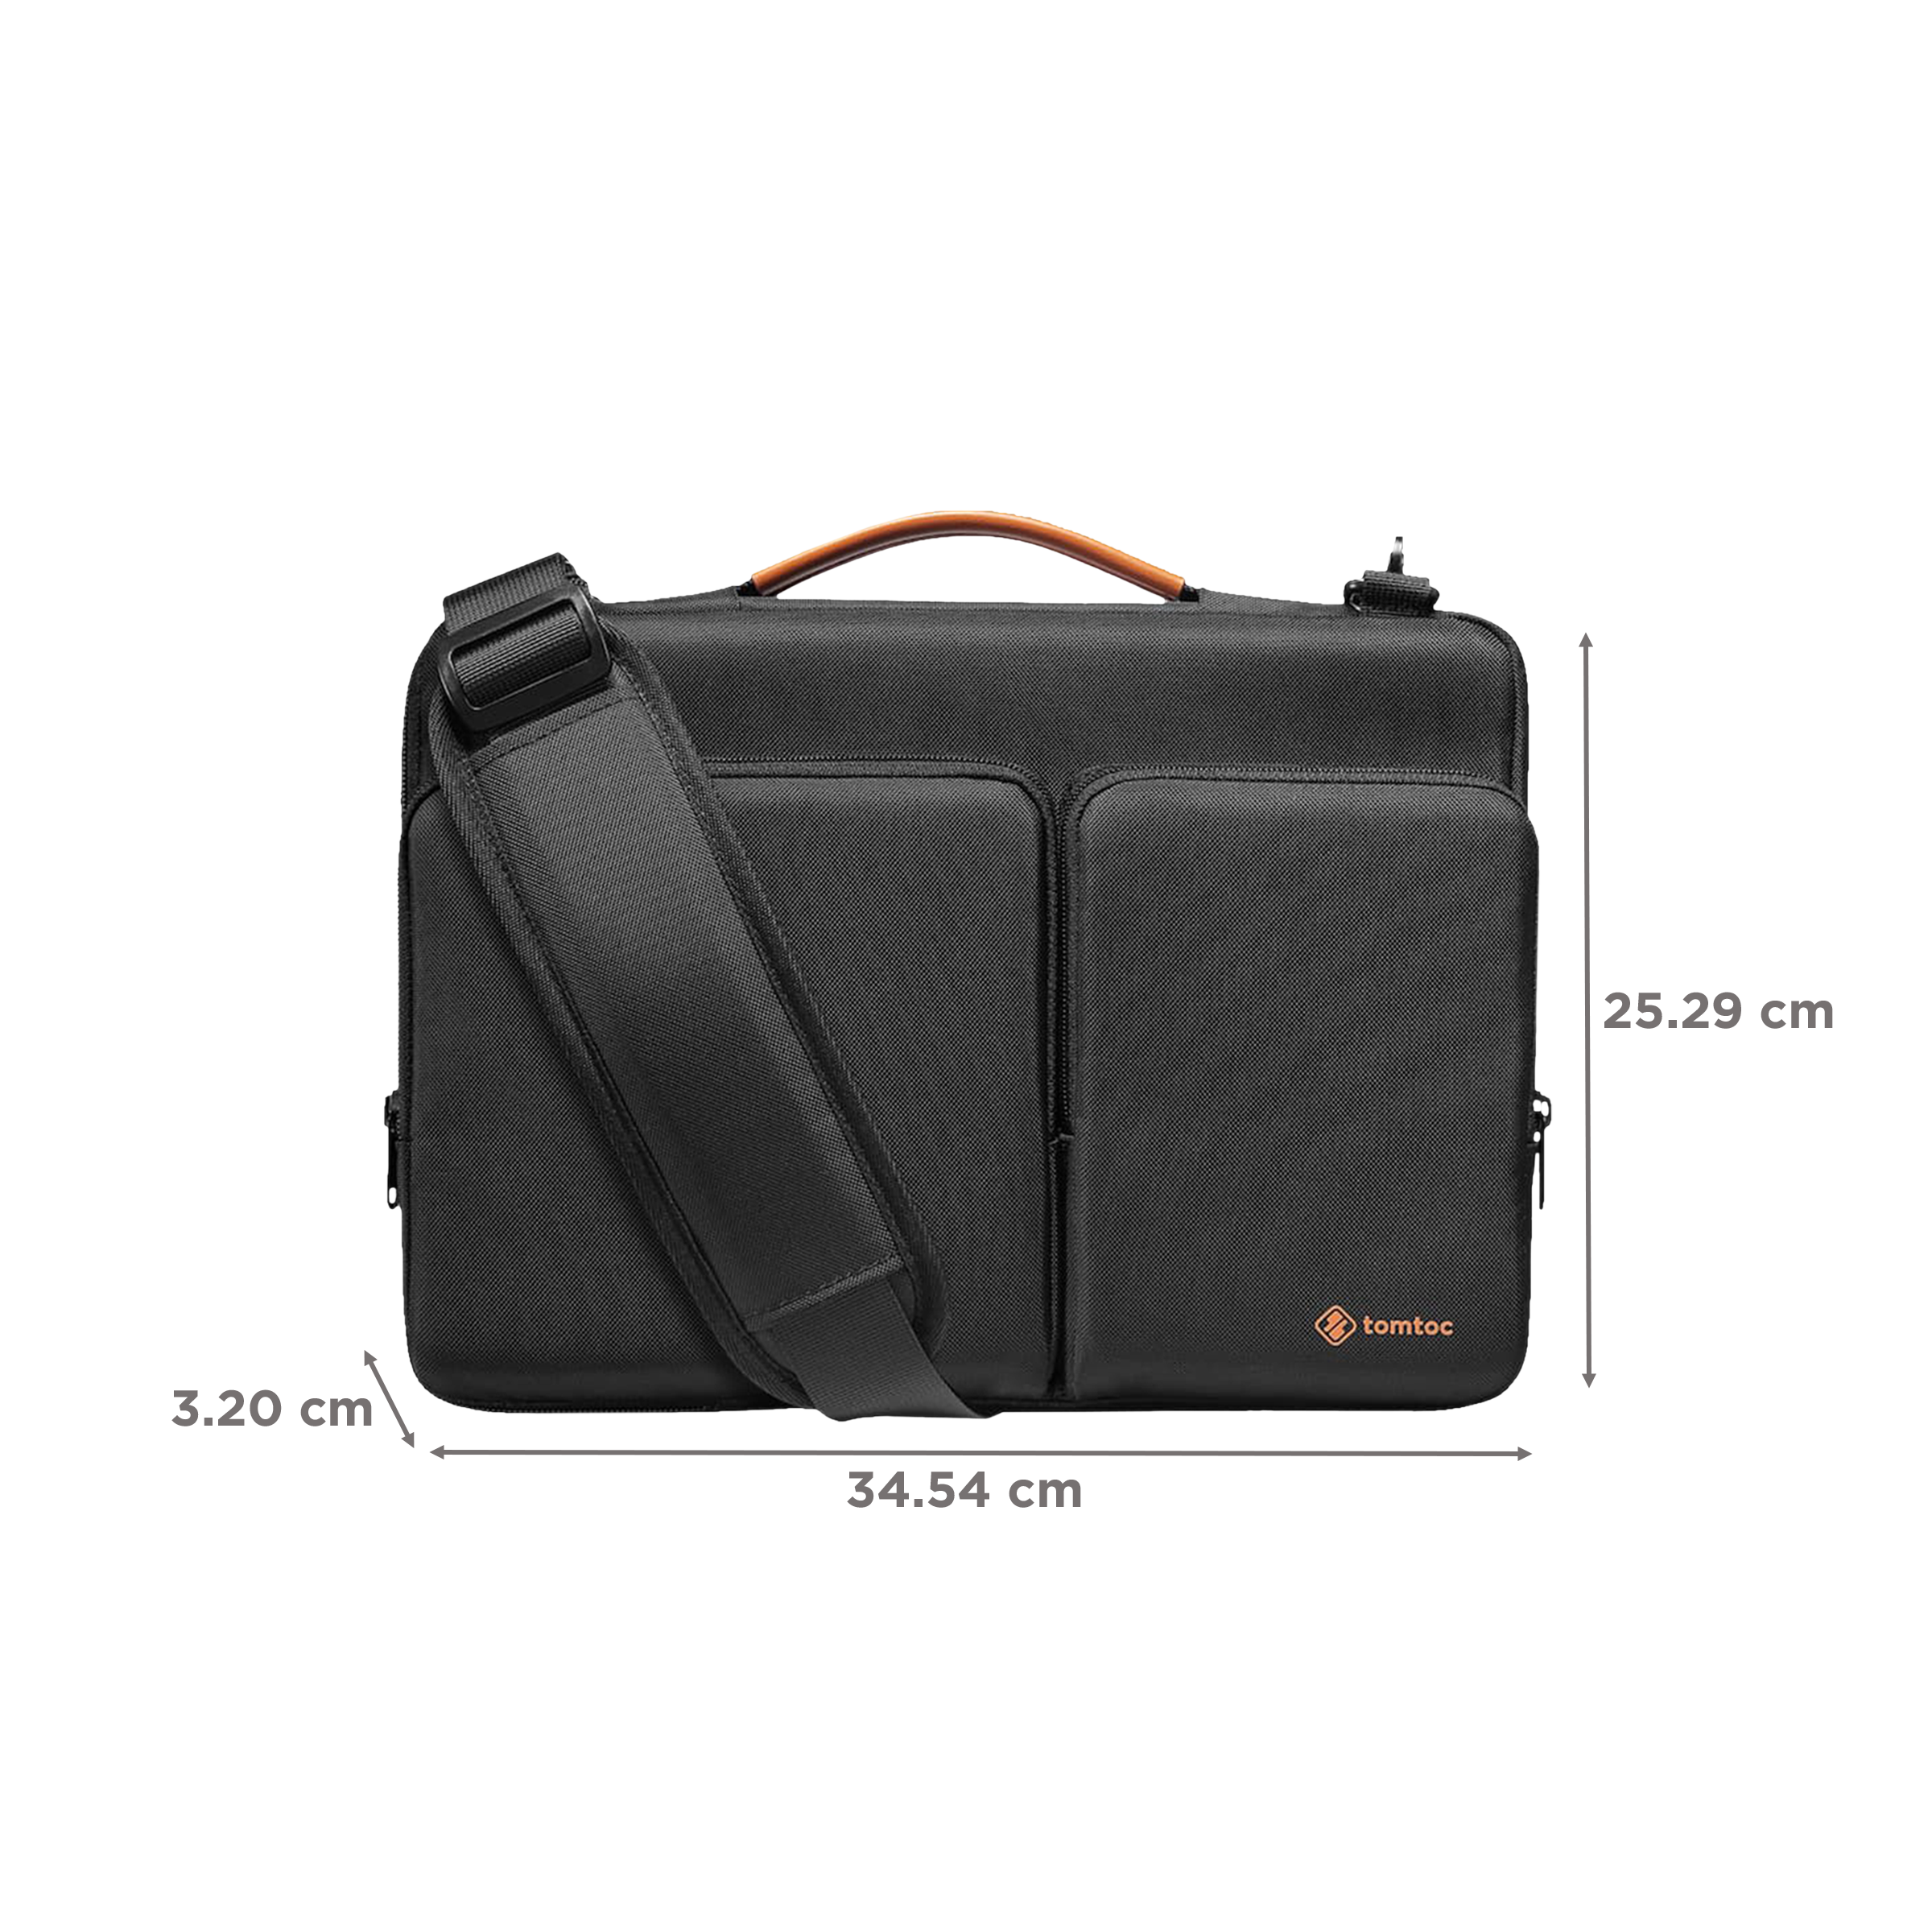 PR 165 Inch Business Computer Bag Laptop Bag for Men Water Resistance  Travel Messenger Bag Perfect Bag Satchel Shoulder Bag for Men